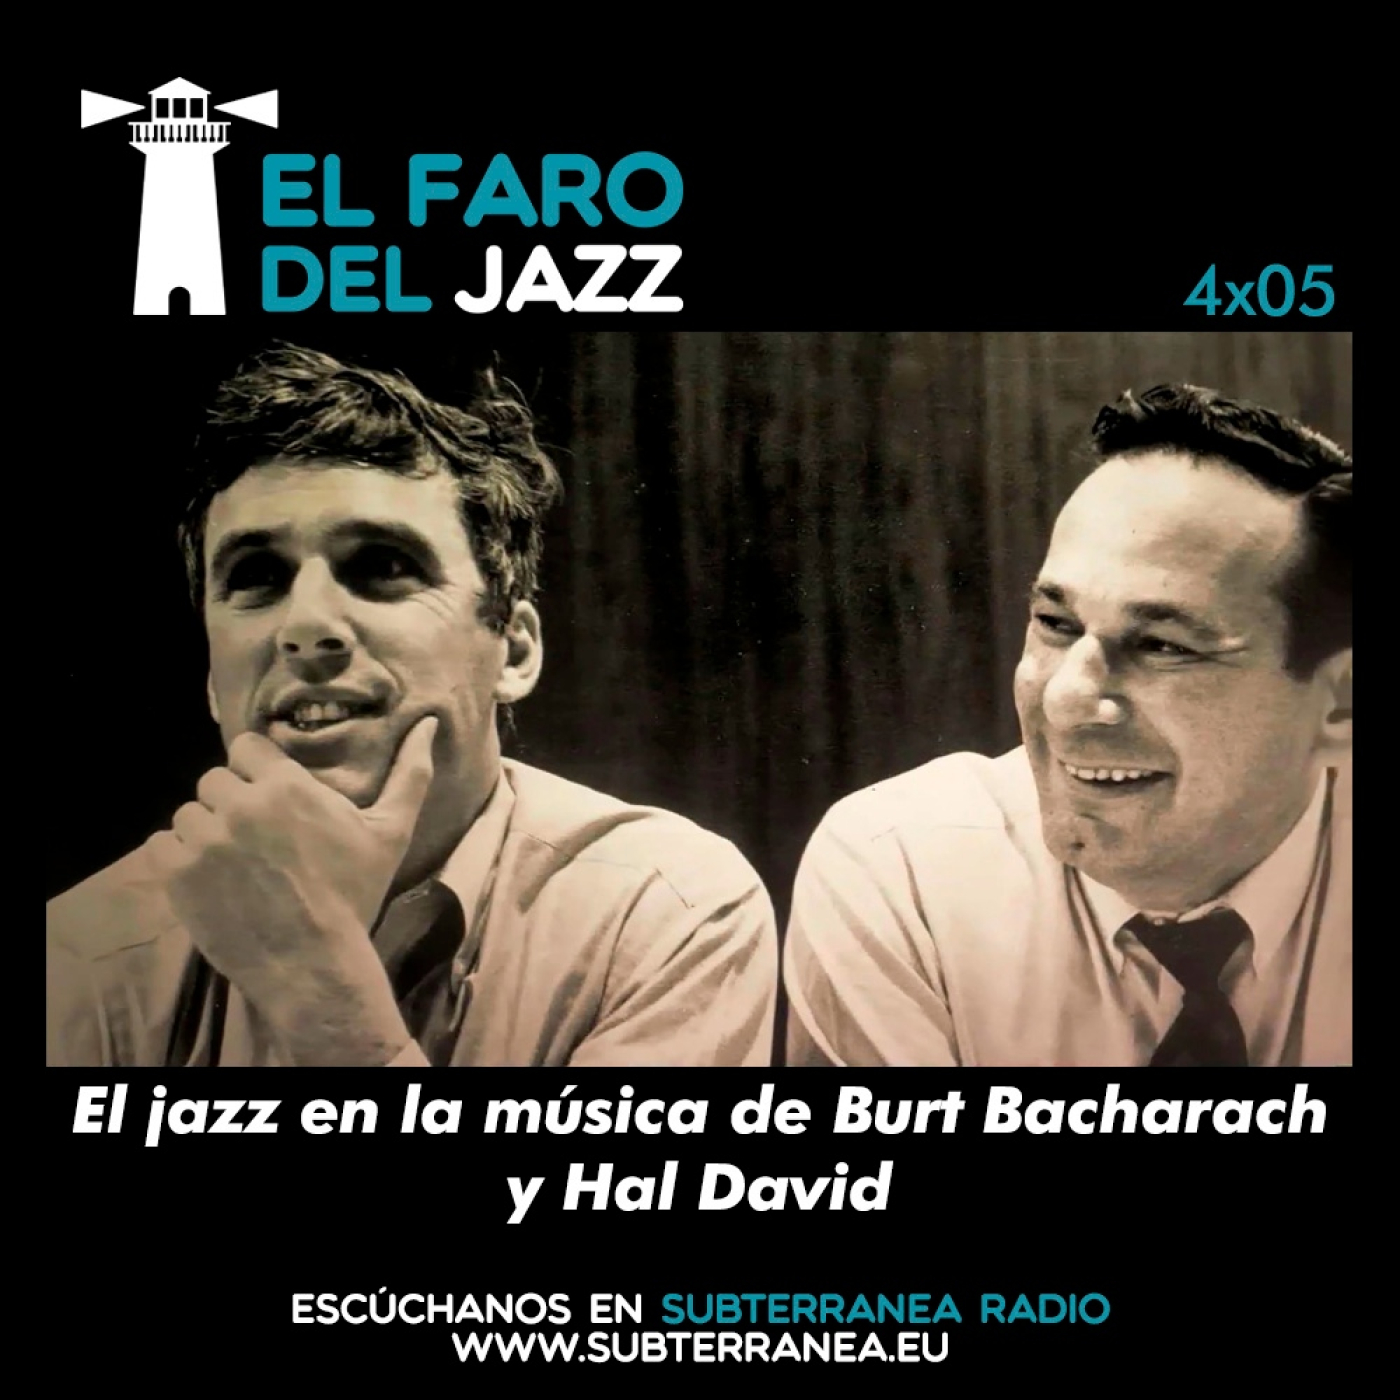 El faro del jazz - 4x05 - El jazz en la música de Burt Bacharach y Hal David